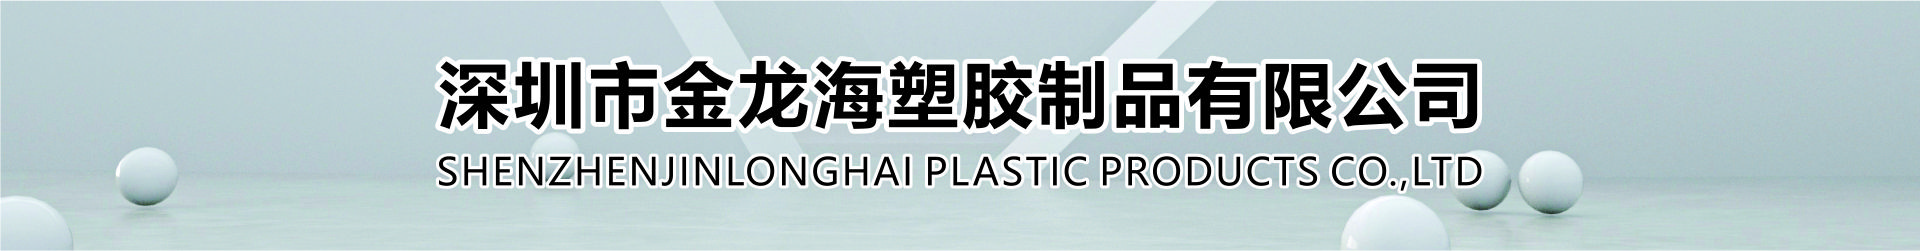 深圳市金龙海塑胶制品有限公司